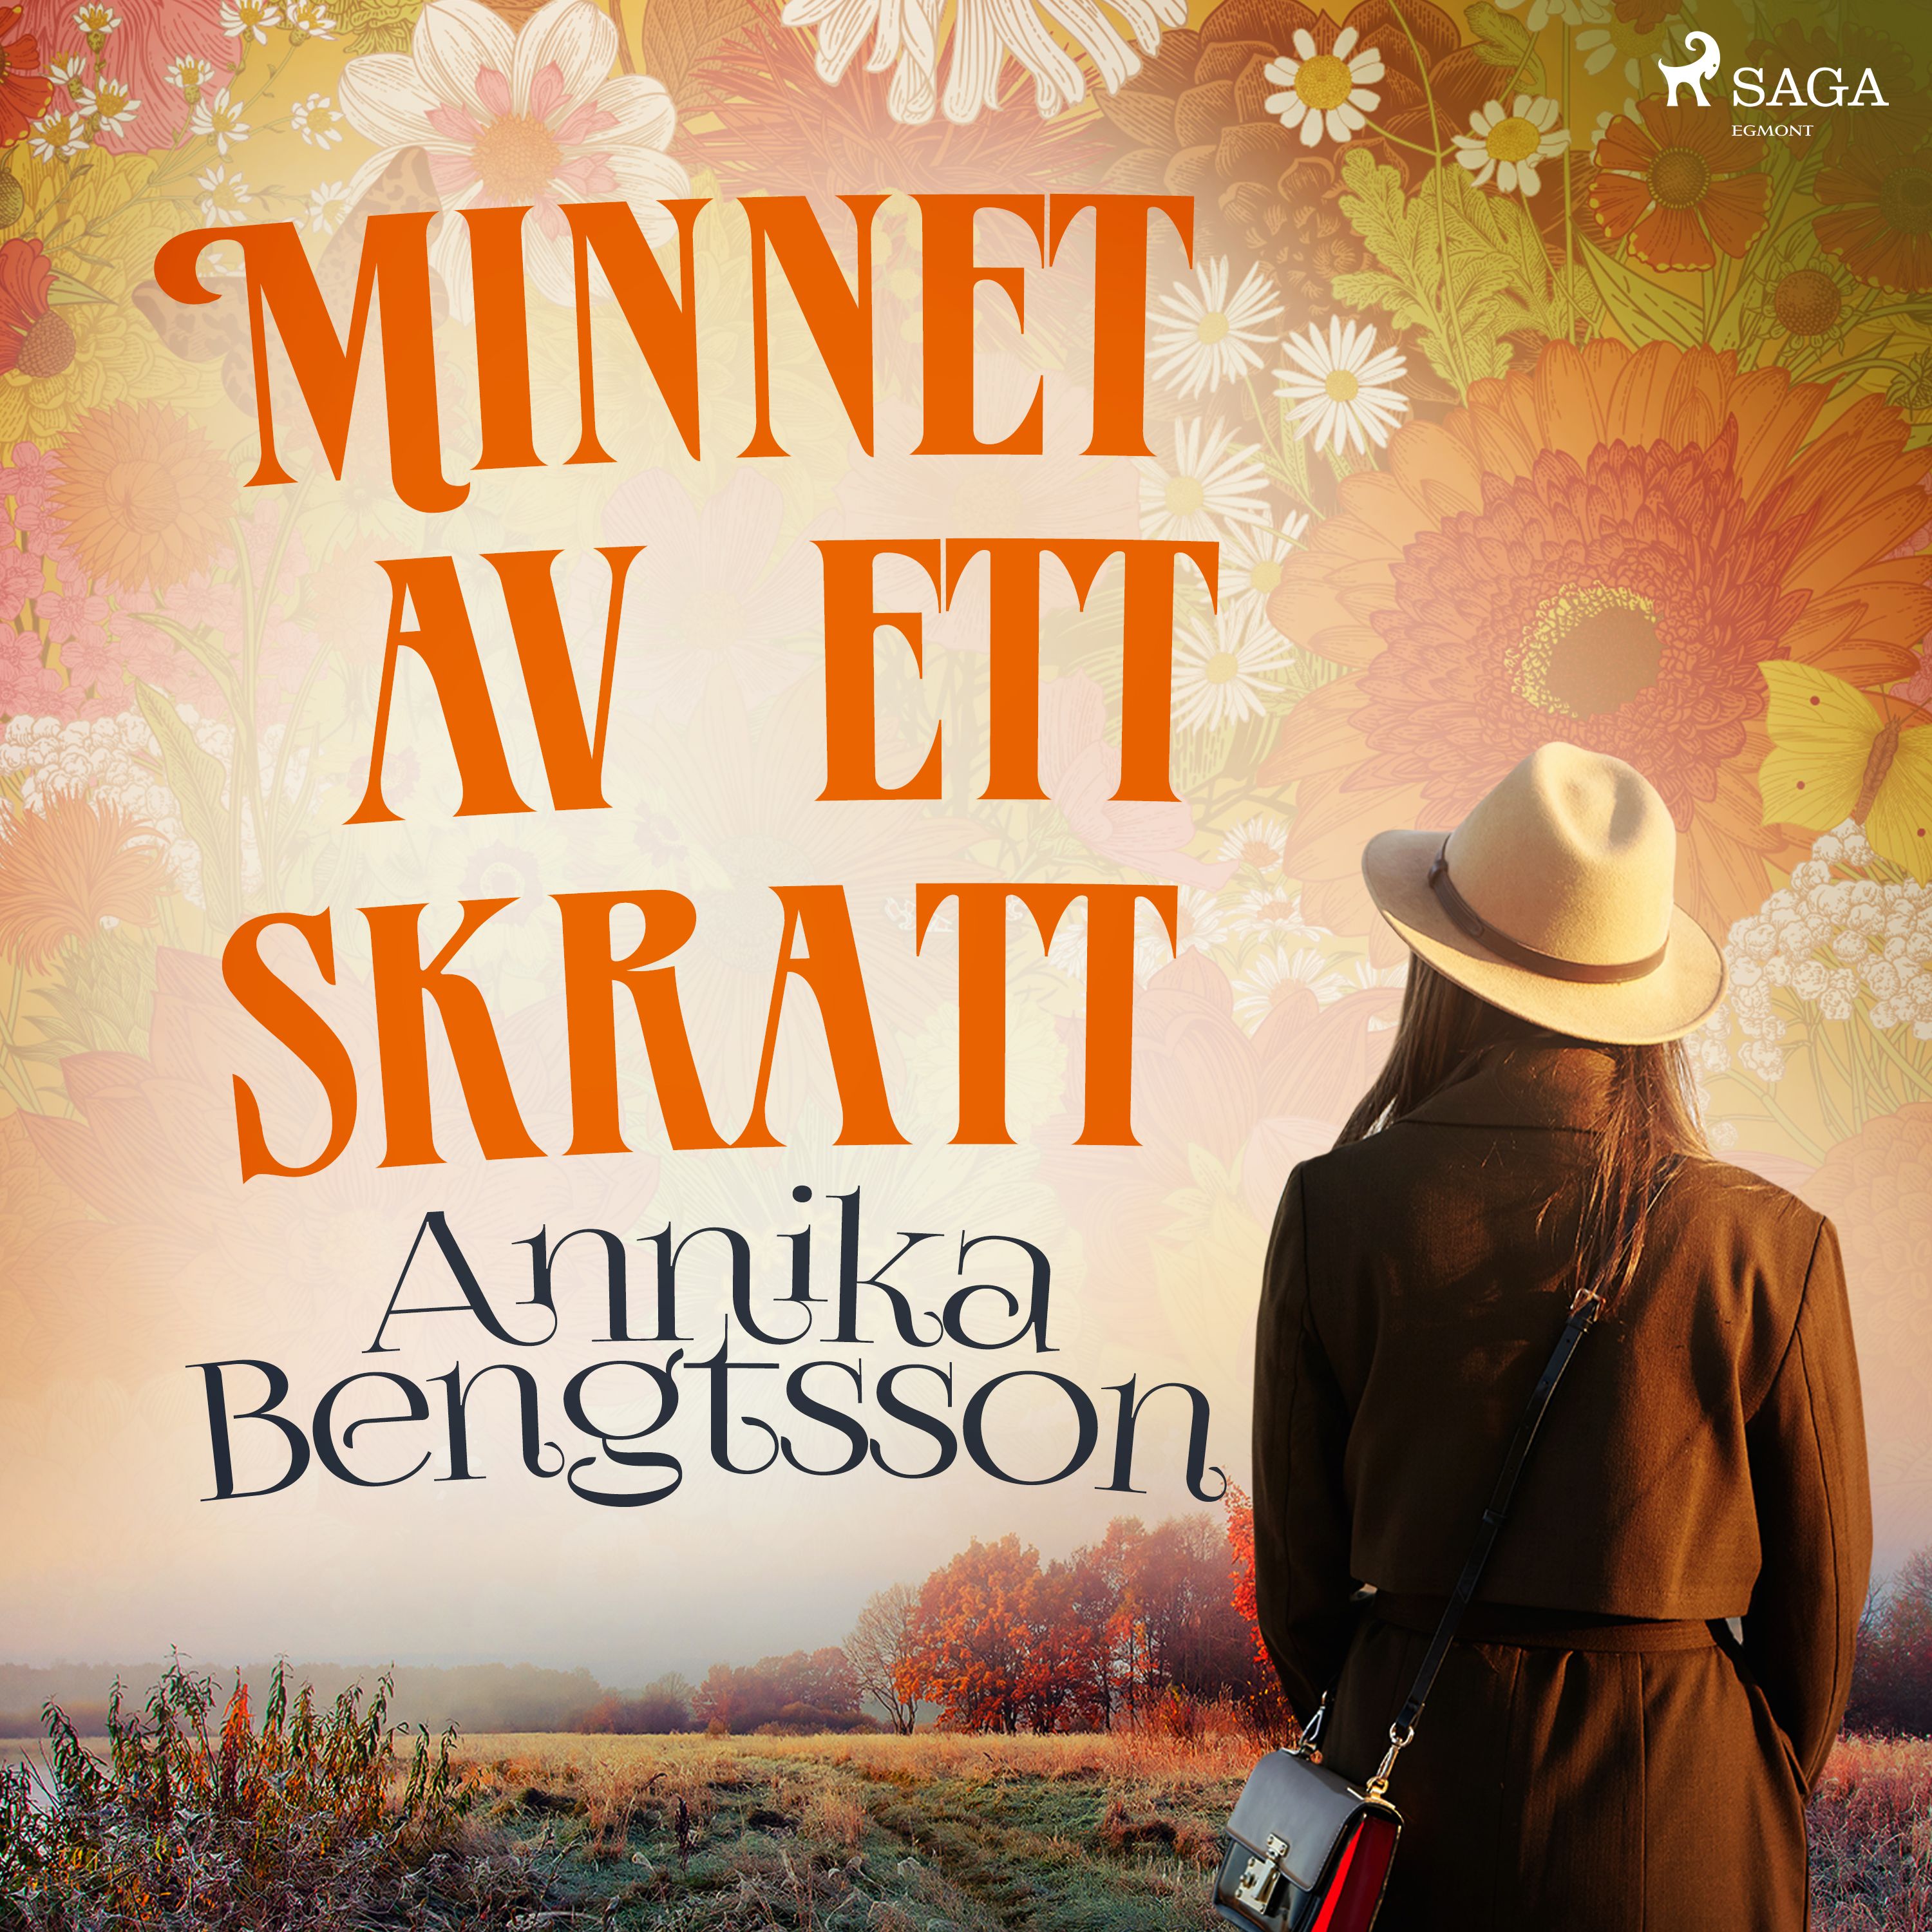 Minnet av ett skratt, audiobook by Annika Bengtsson